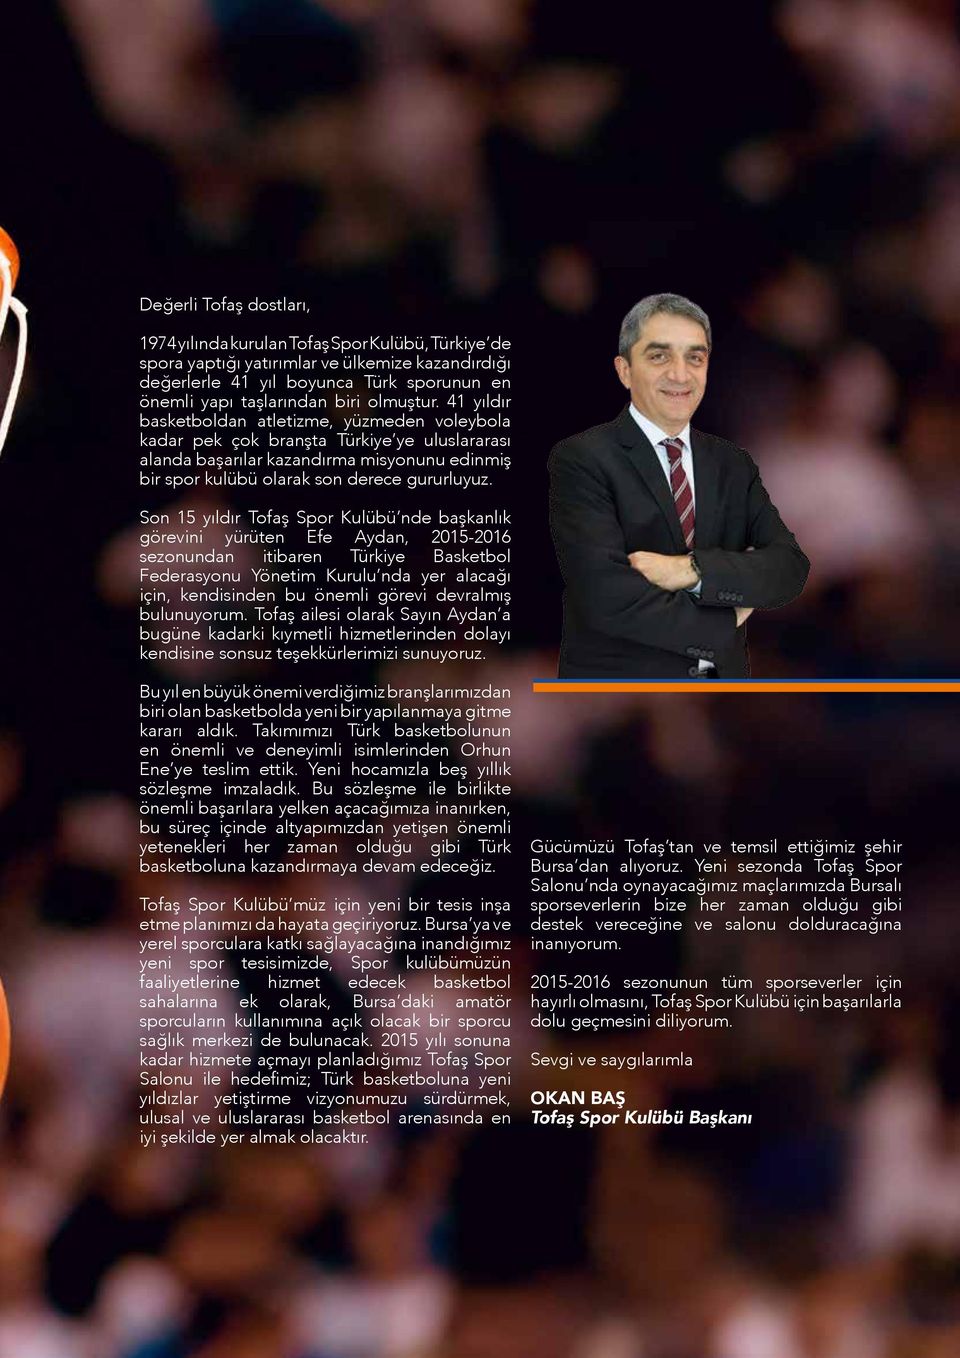 Son 15 yıldır Tofaş Spor Kulübü nde başkanlık görevini yürüten Efe Aydan, 2015-2016 sezonundan itibaren Türkiye Basketbol Federasyonu Yönetim Kurulu nda yer alacağı için, kendisinden bu önemli görevi